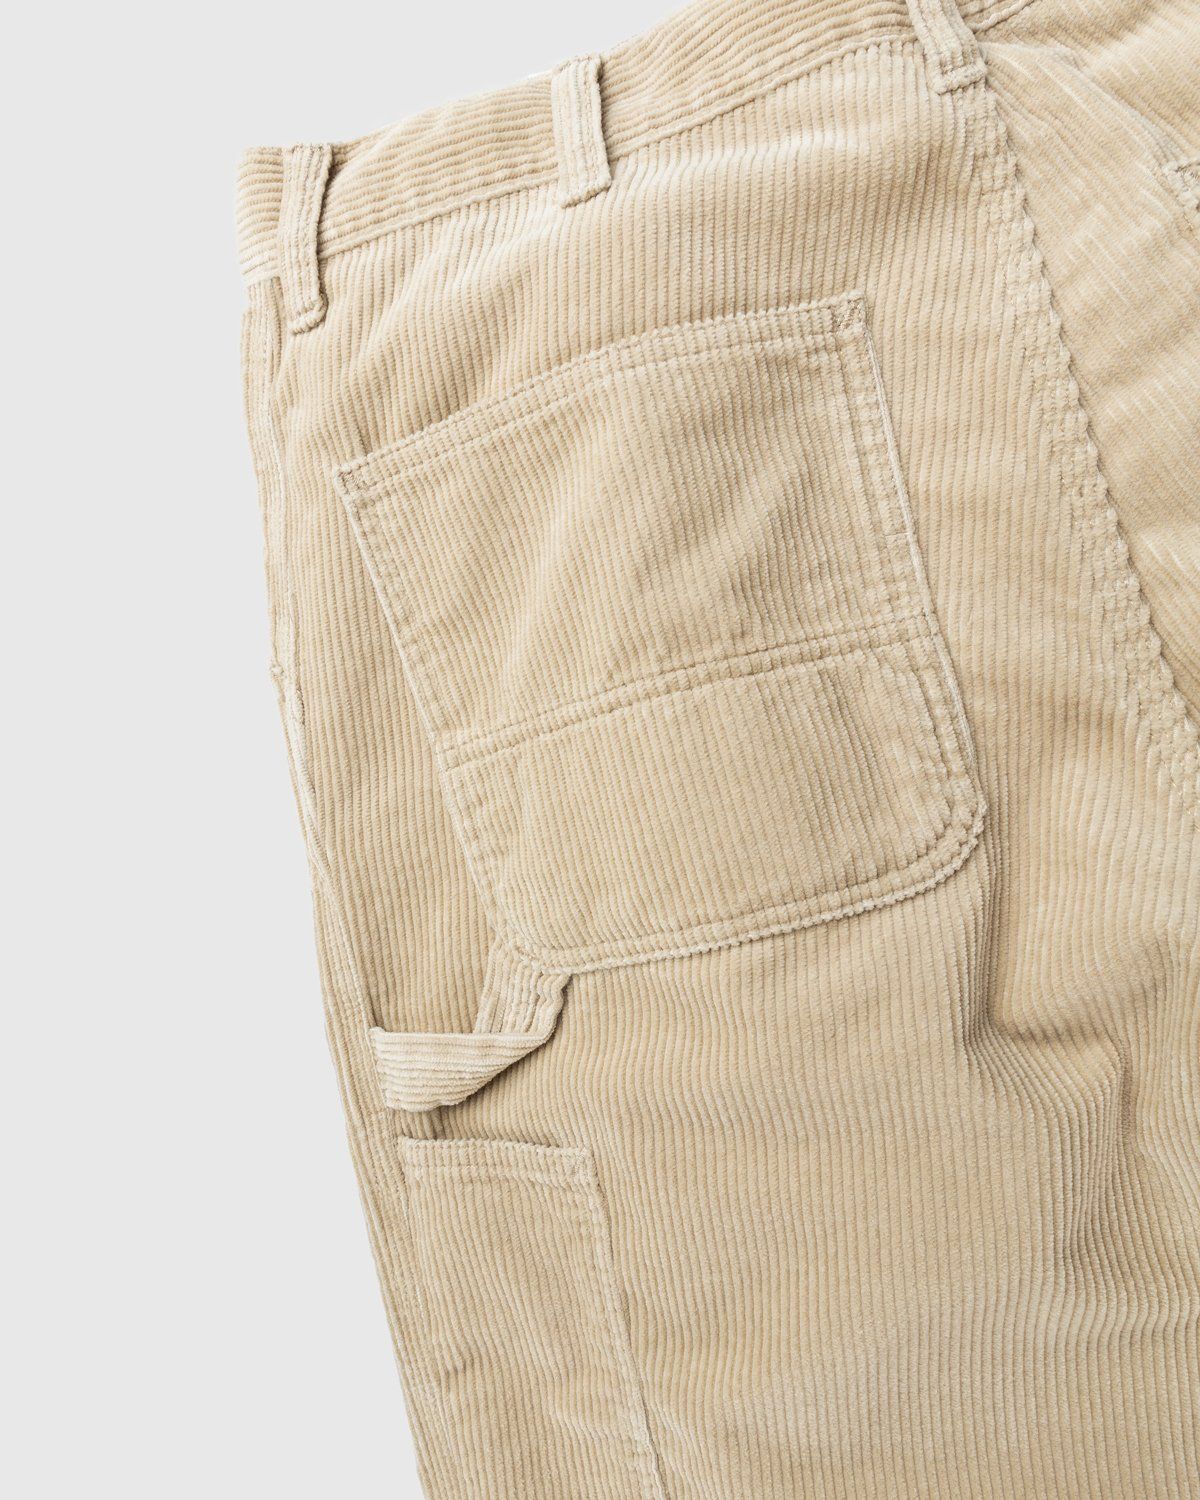 Carhartt WIP – Ruck Single Knee Pant Beige - Pants - Brown - Image 4